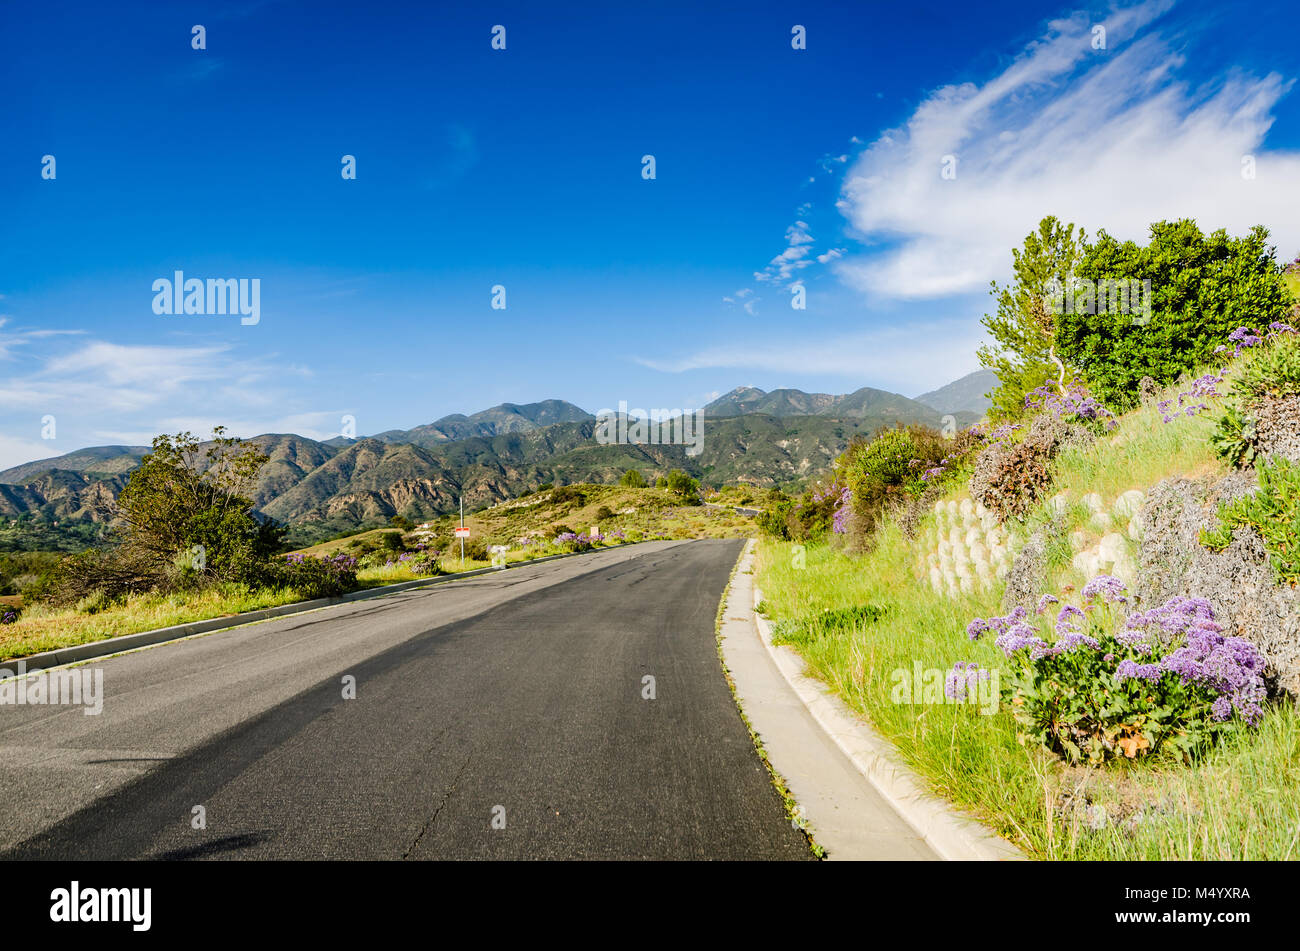 Route asphaltée sinueuse au milieu de fleurs de printemps sur des collines, des canyons et montagnes dans le comté d'Orange, en Californie. Banque D'Images